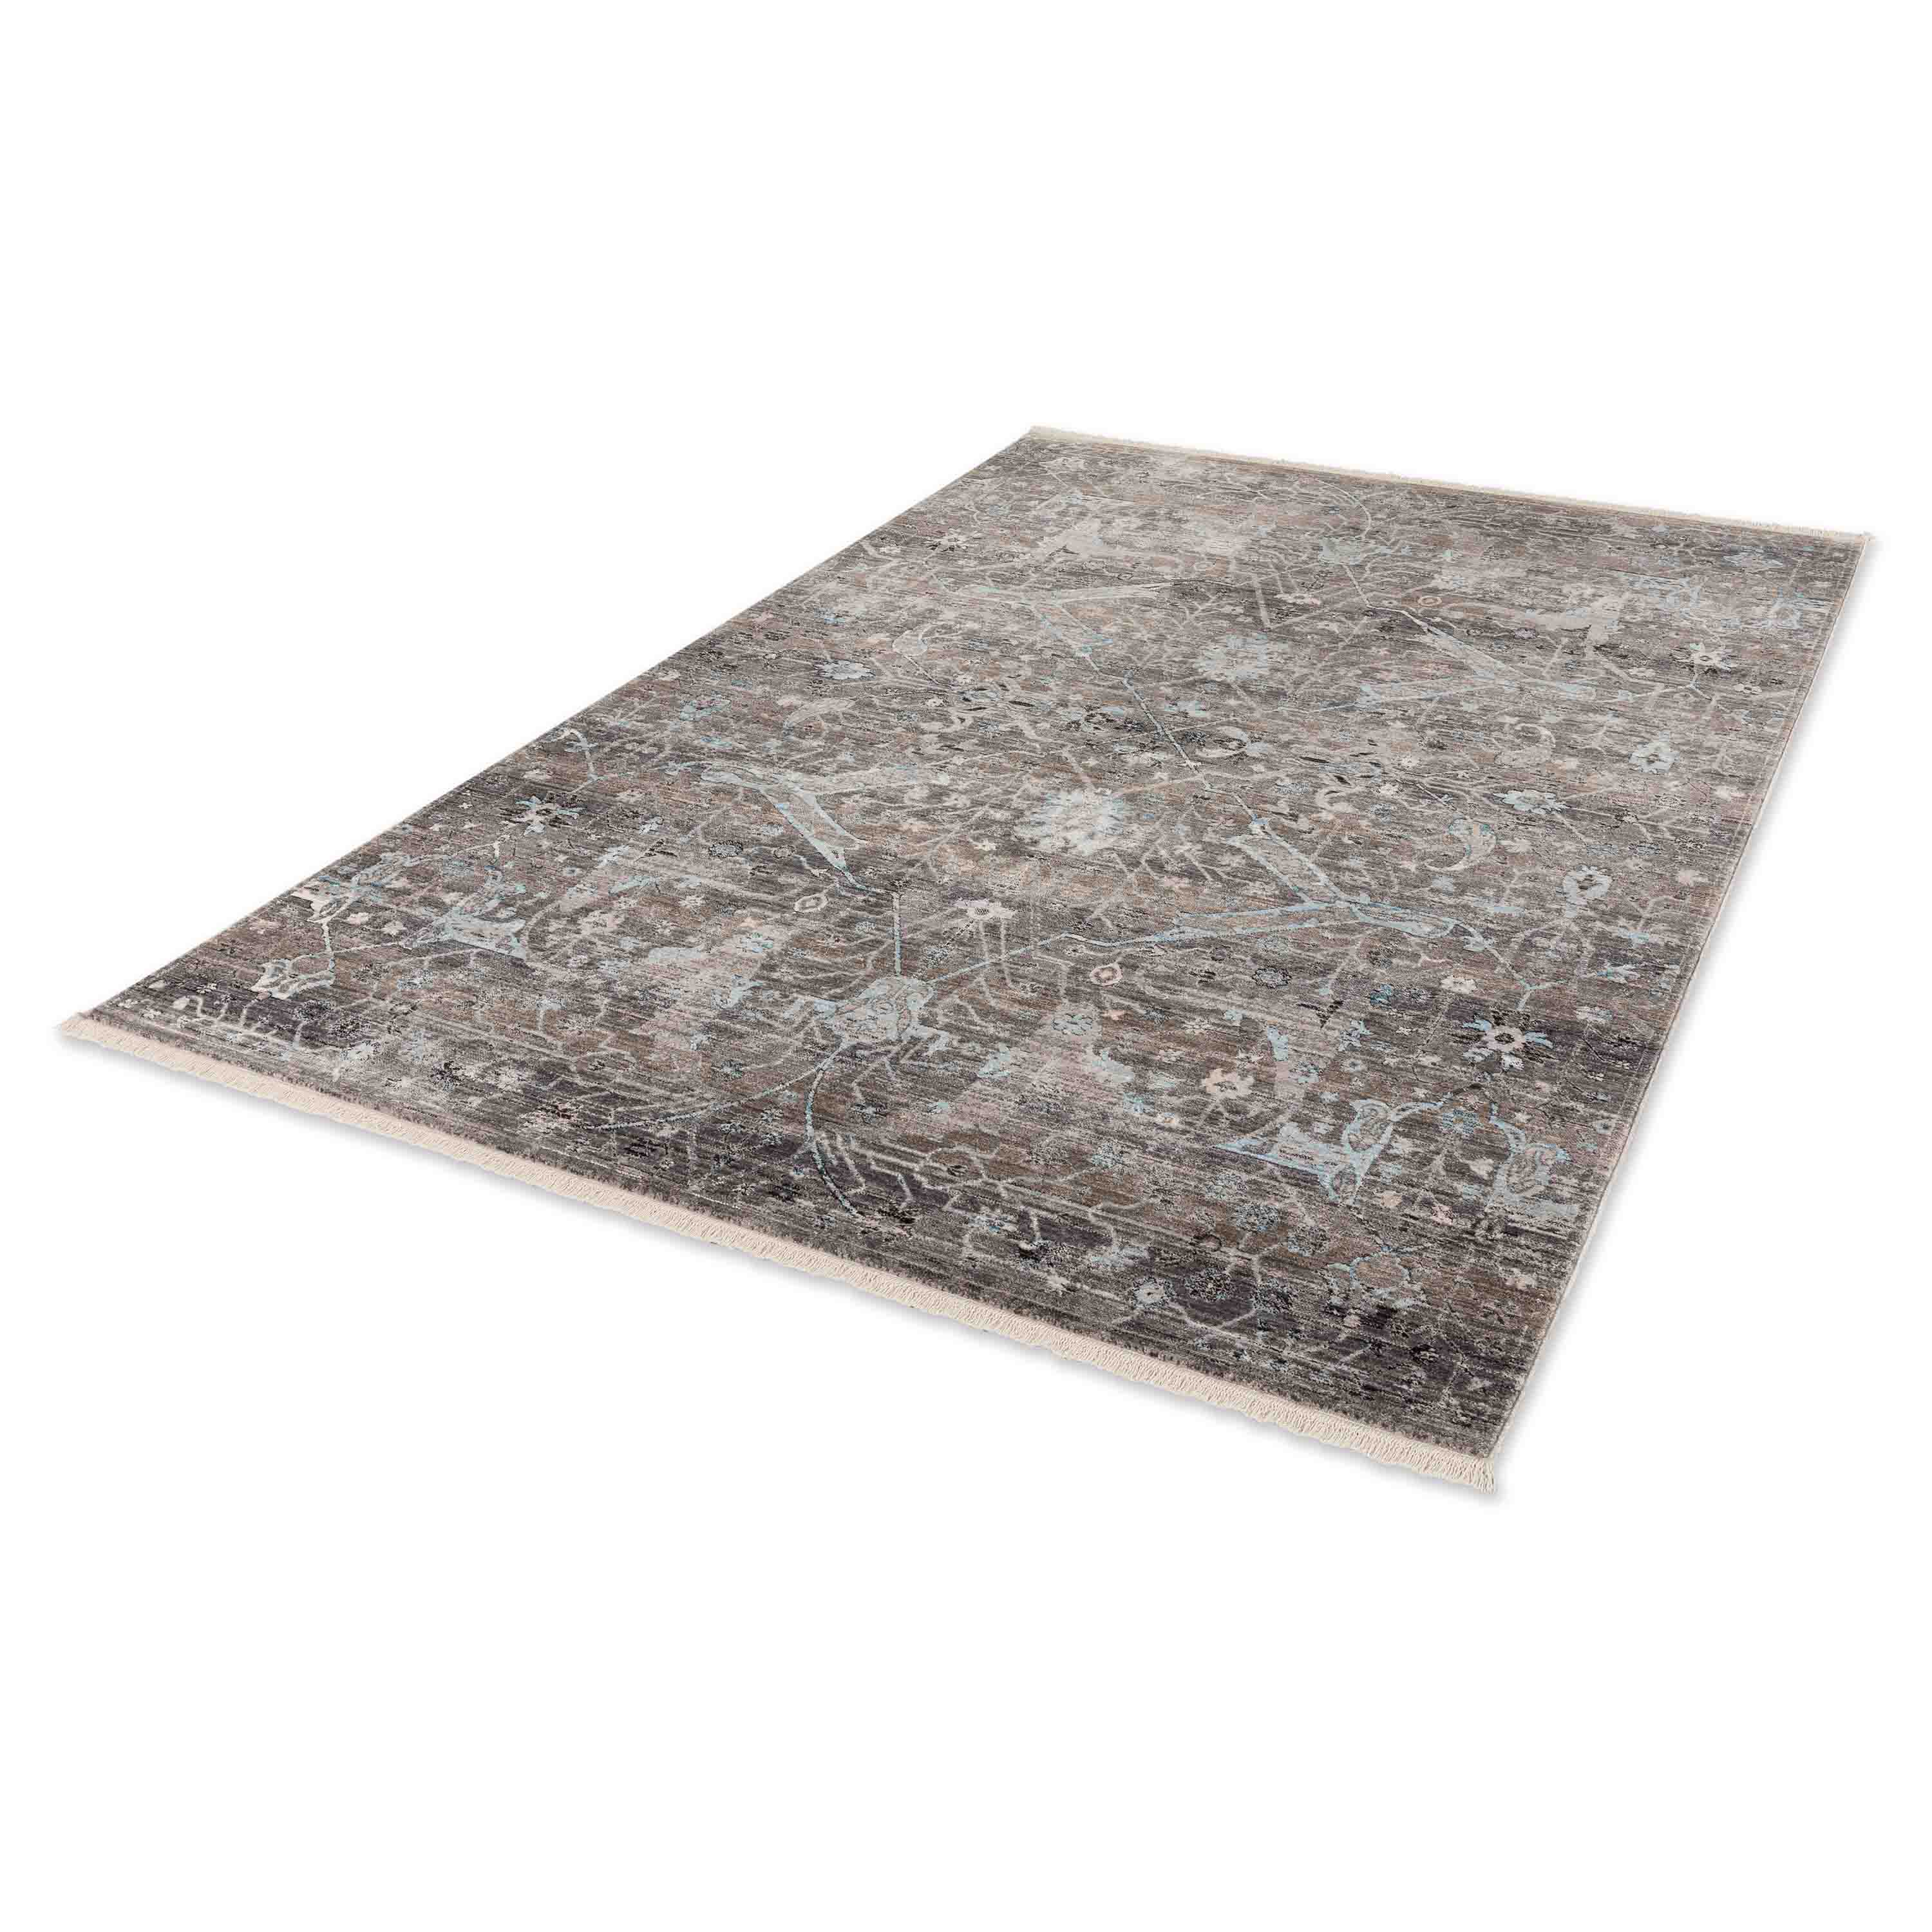 Schöner Wohnen Kollektion Teppich Mystik 70x140 cm Grau